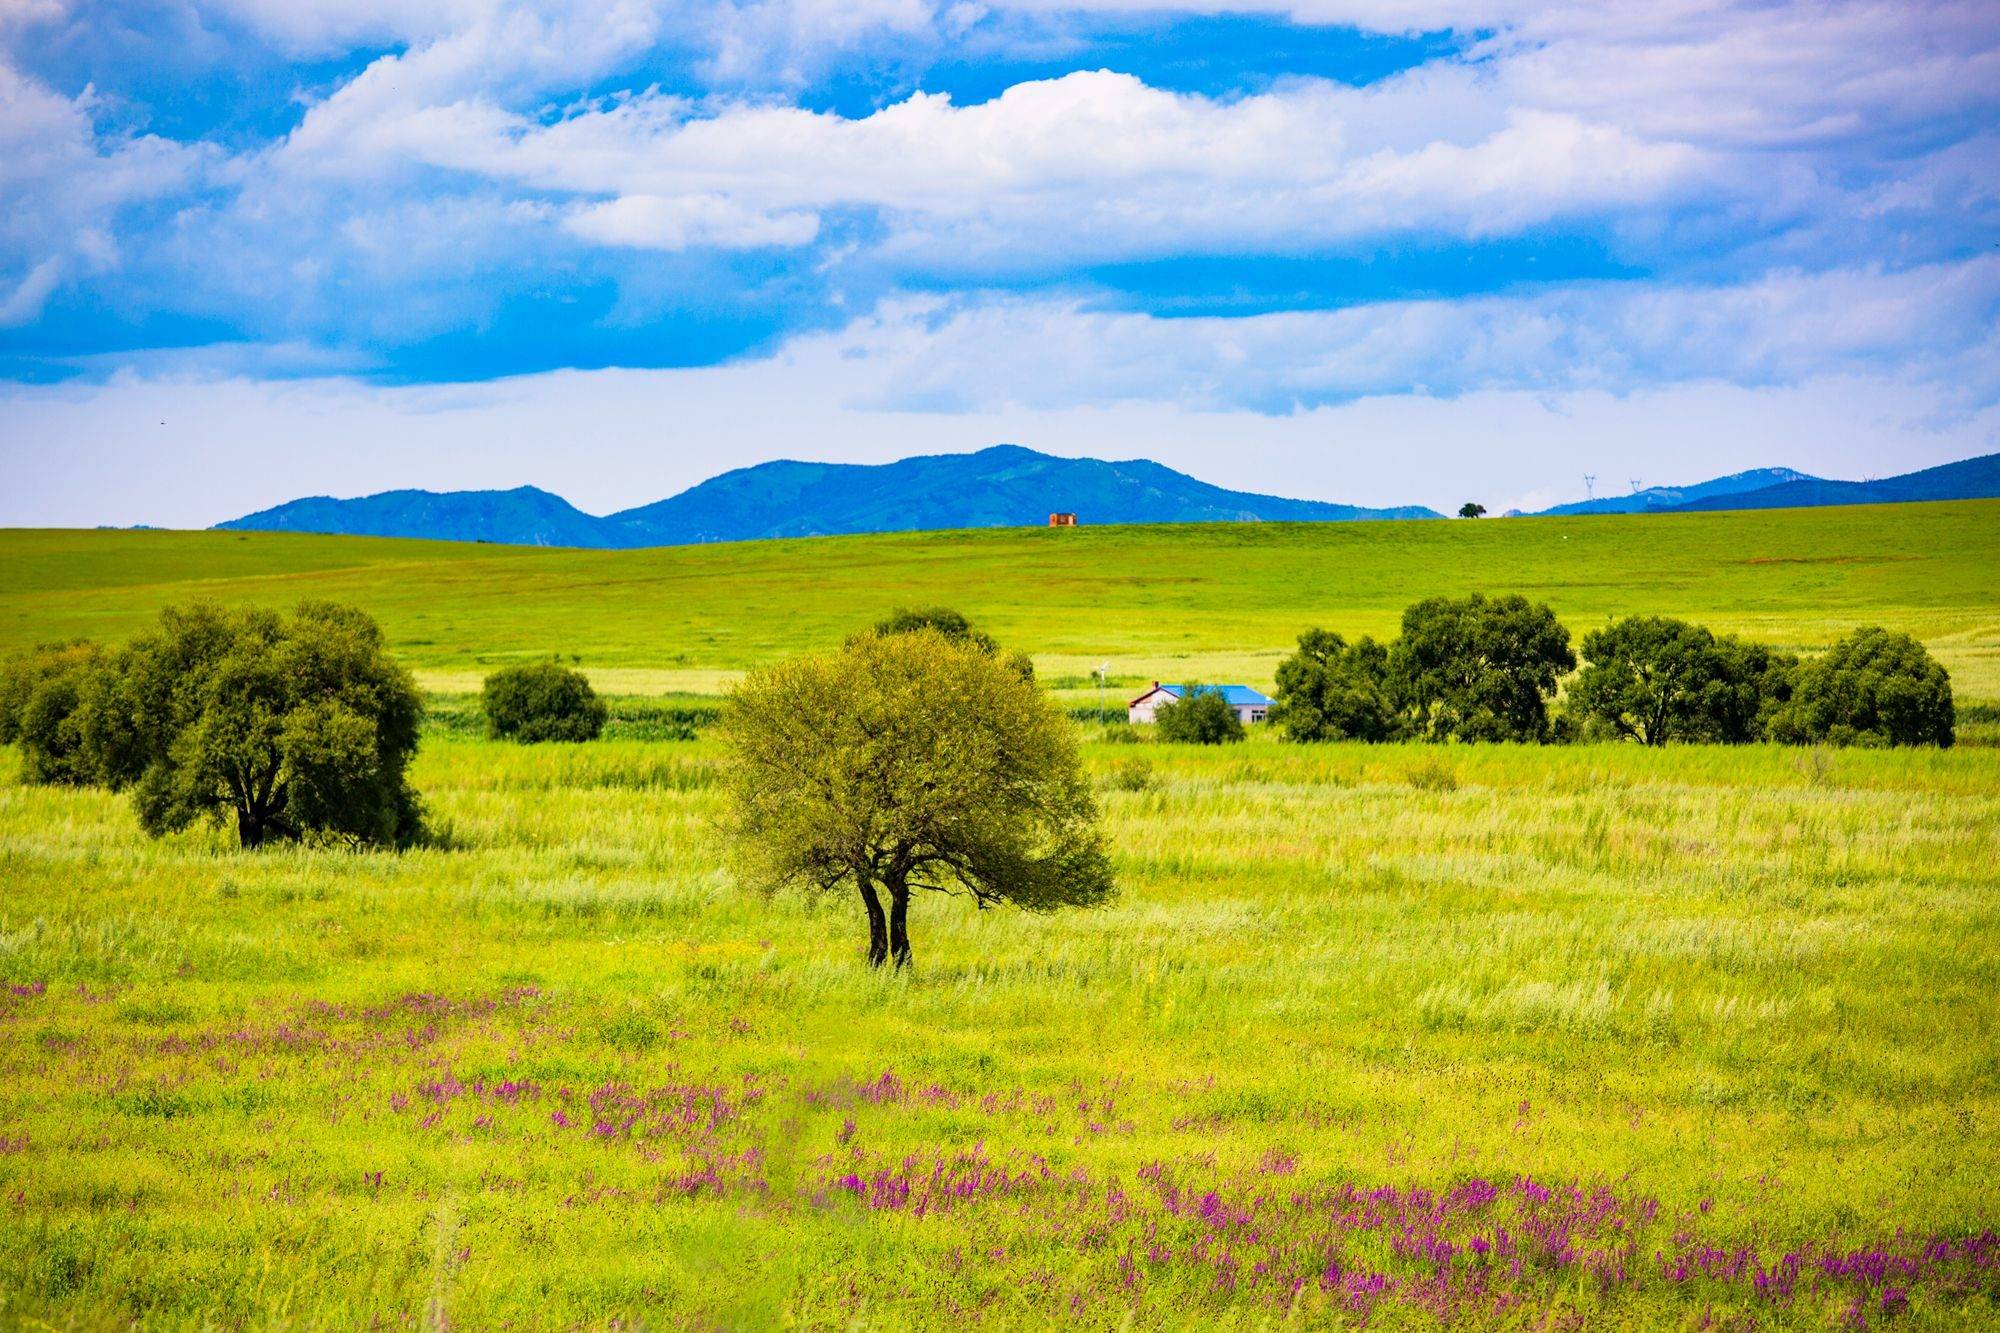 内蒙古兴安盟有一处满族民族乡，风景秀美，这里有独特的满蒙风情